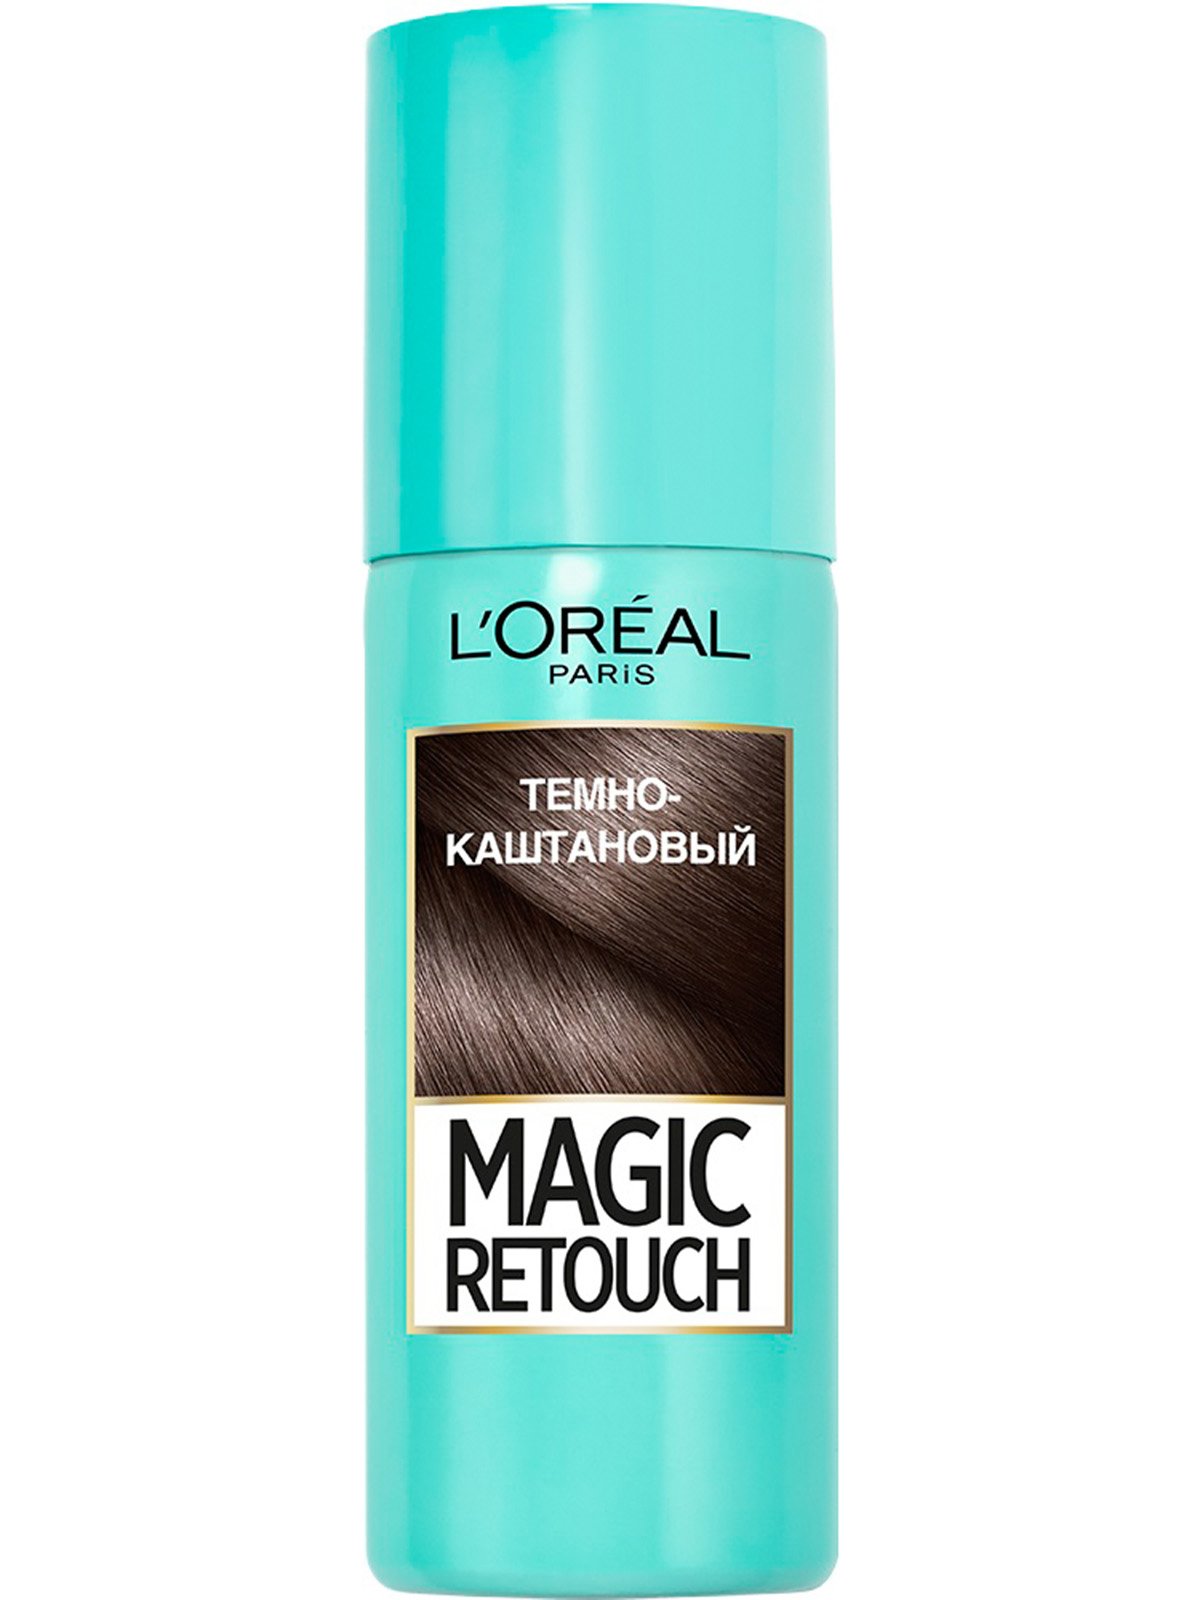 Спрей для зафарбовування відрослих коренів L’Oréal Paris Magic Retouch № 2 - темно-каштановий (75 мл) | 3956230